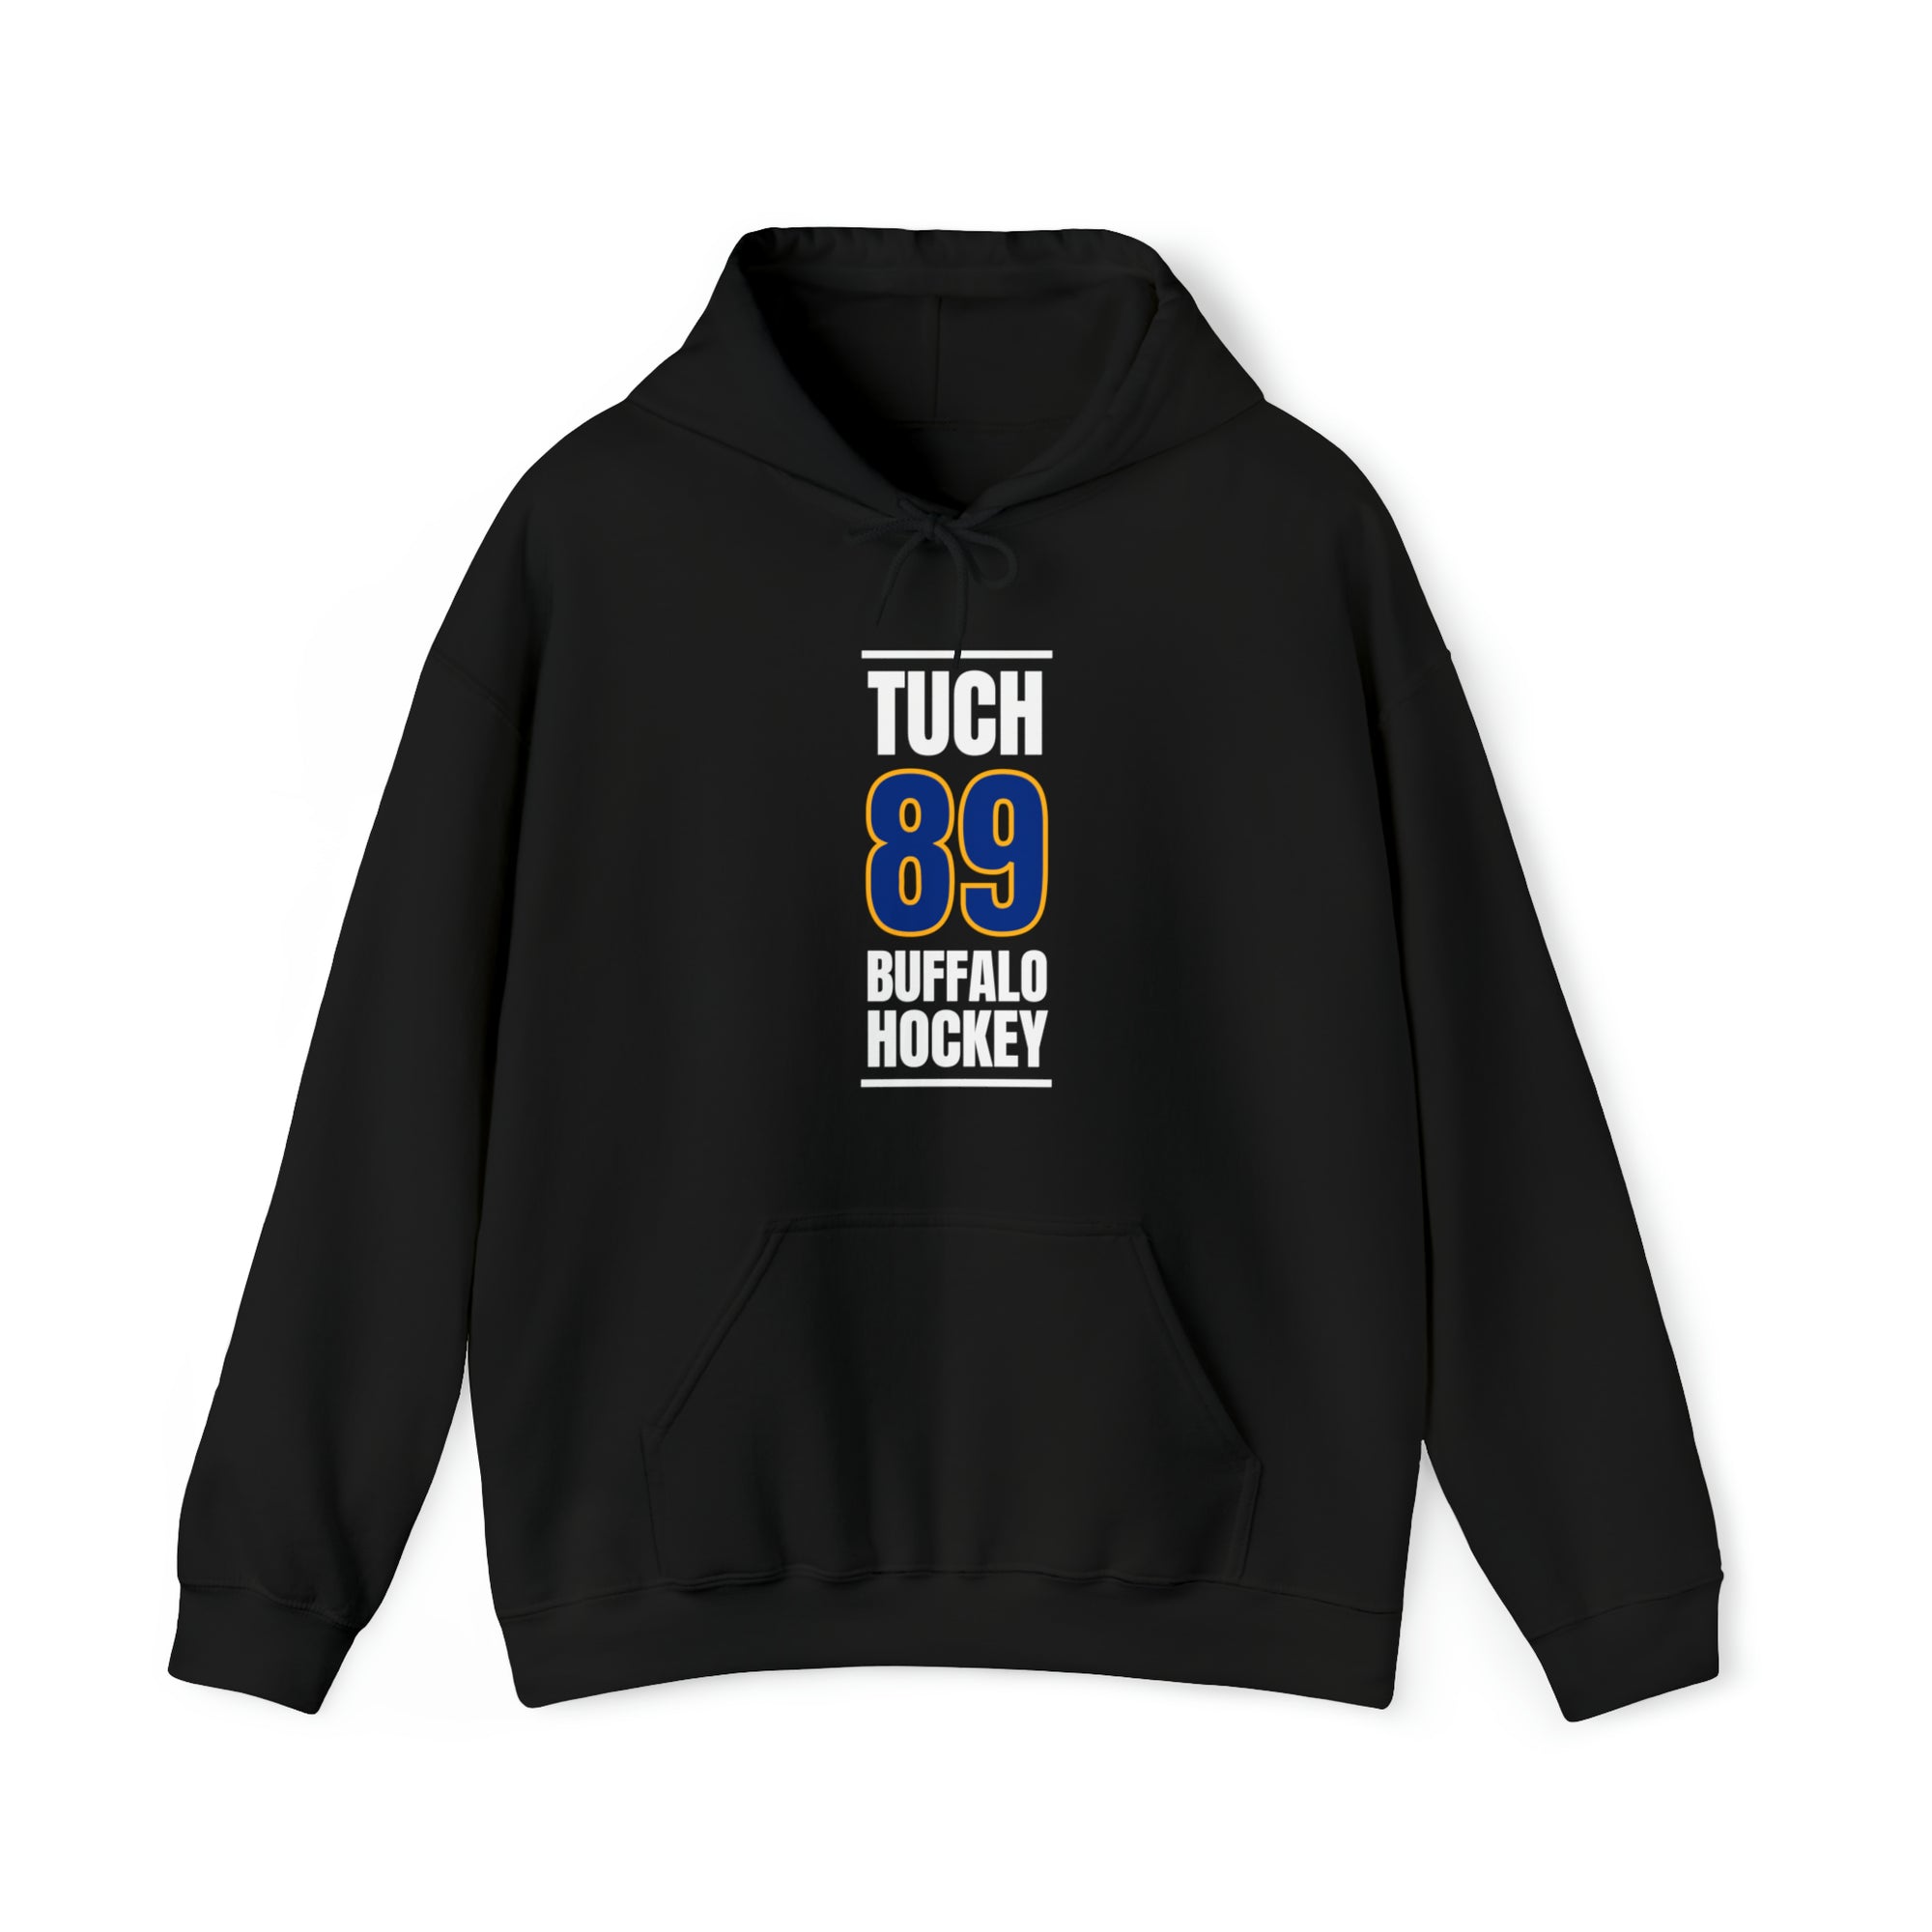 Tuch 89 Buffalo Hockey Royal Blue Vertical Design Unisex Hooded Sweatshirt